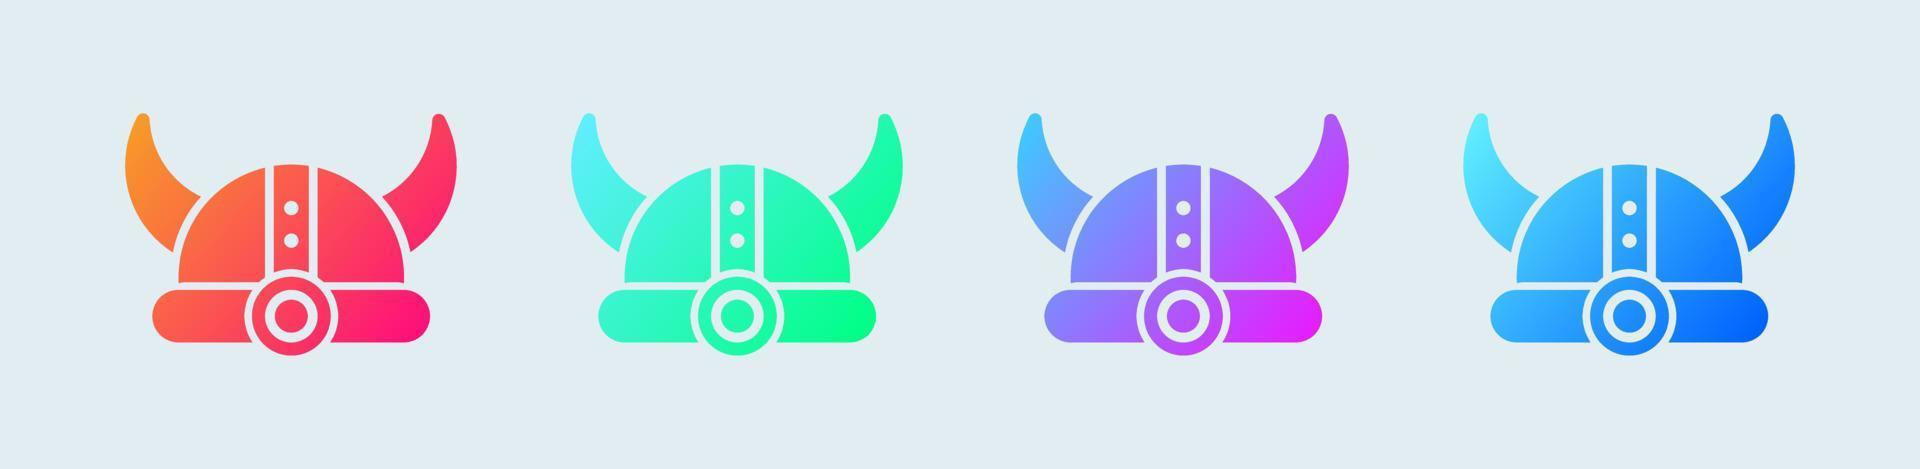 Viking helm solide pictogram in gradiëntkleuren. helm met hoorns tekenen vector illustratie.